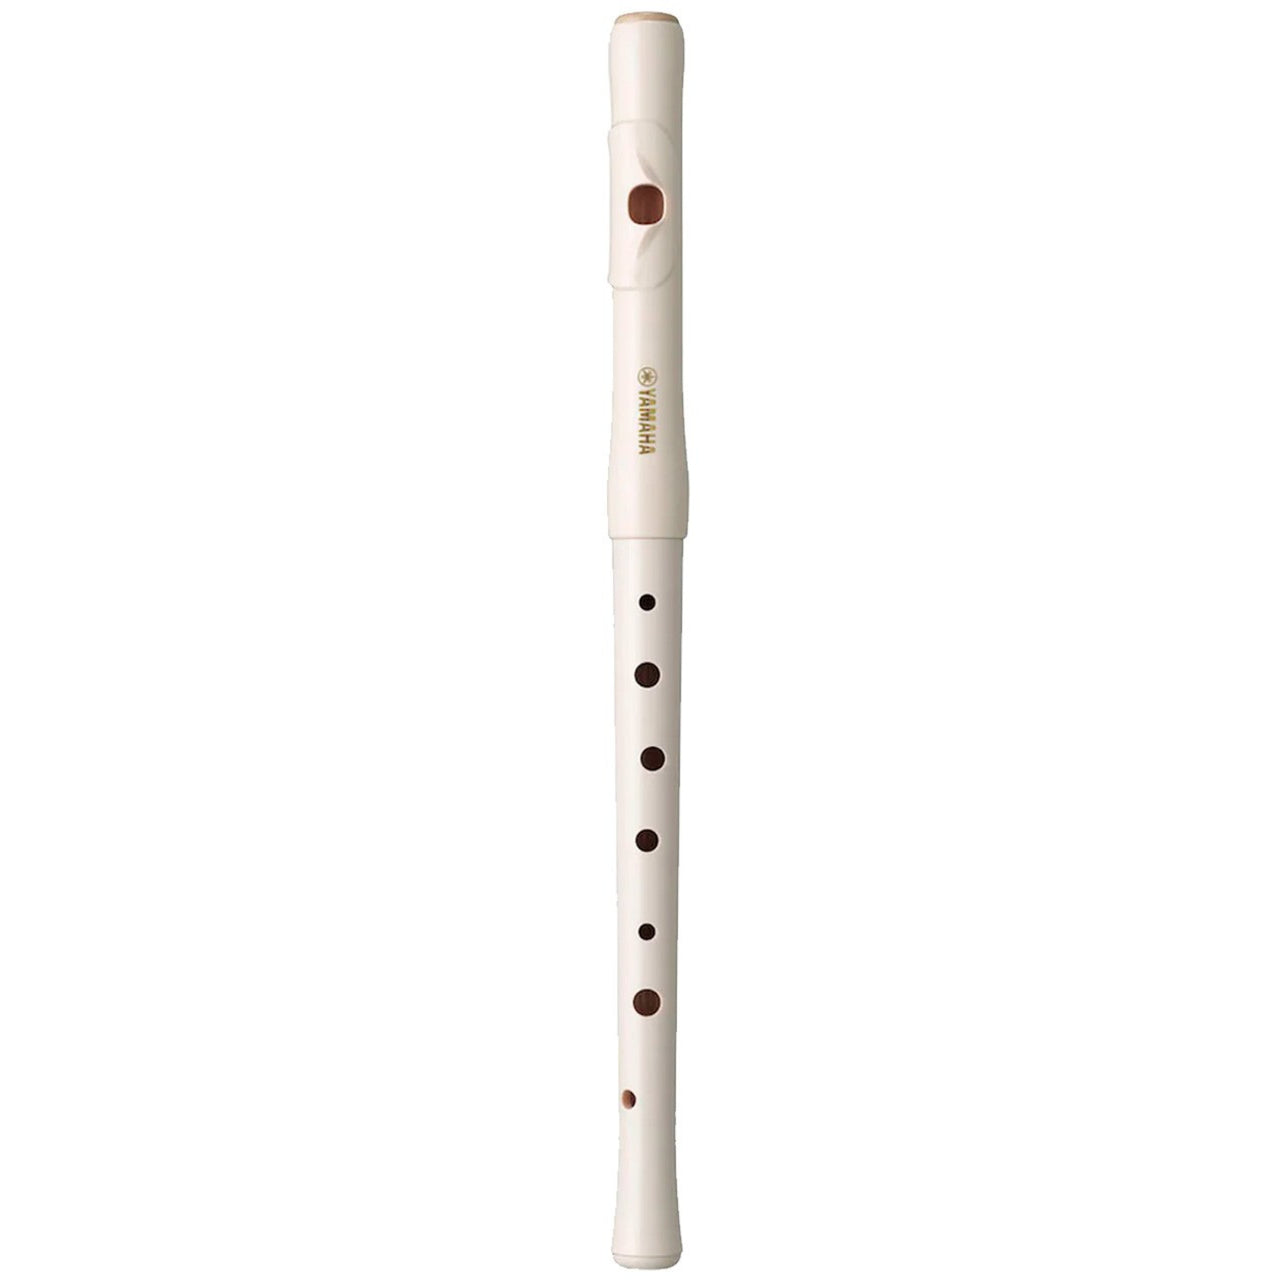 Flauta Transversal Yamaha De Plastico En C (Pifano), Yrf21